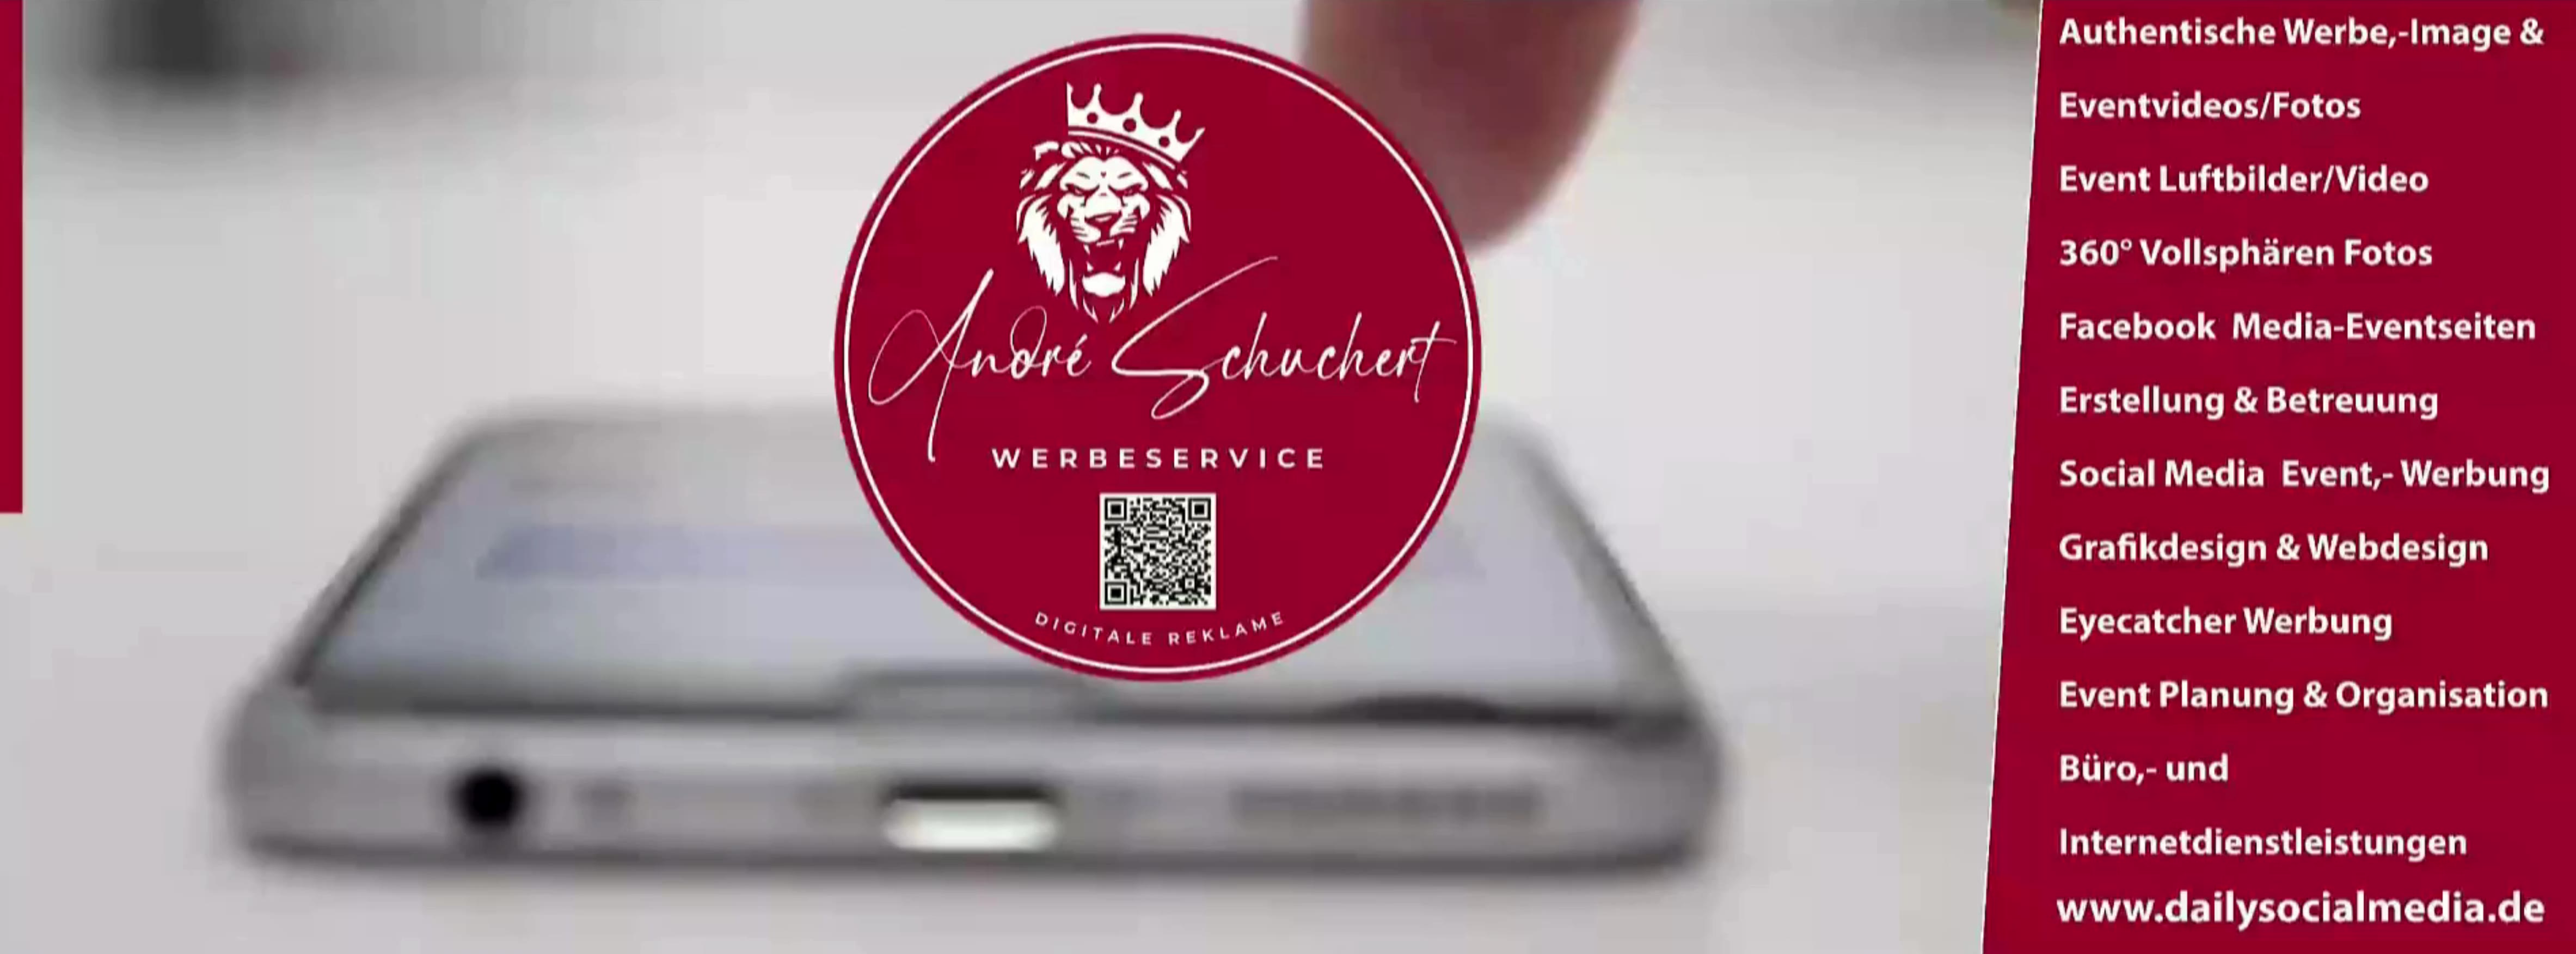 Anmelden | Werbeservice André Schuchert - Digitale Reklame Dortmund